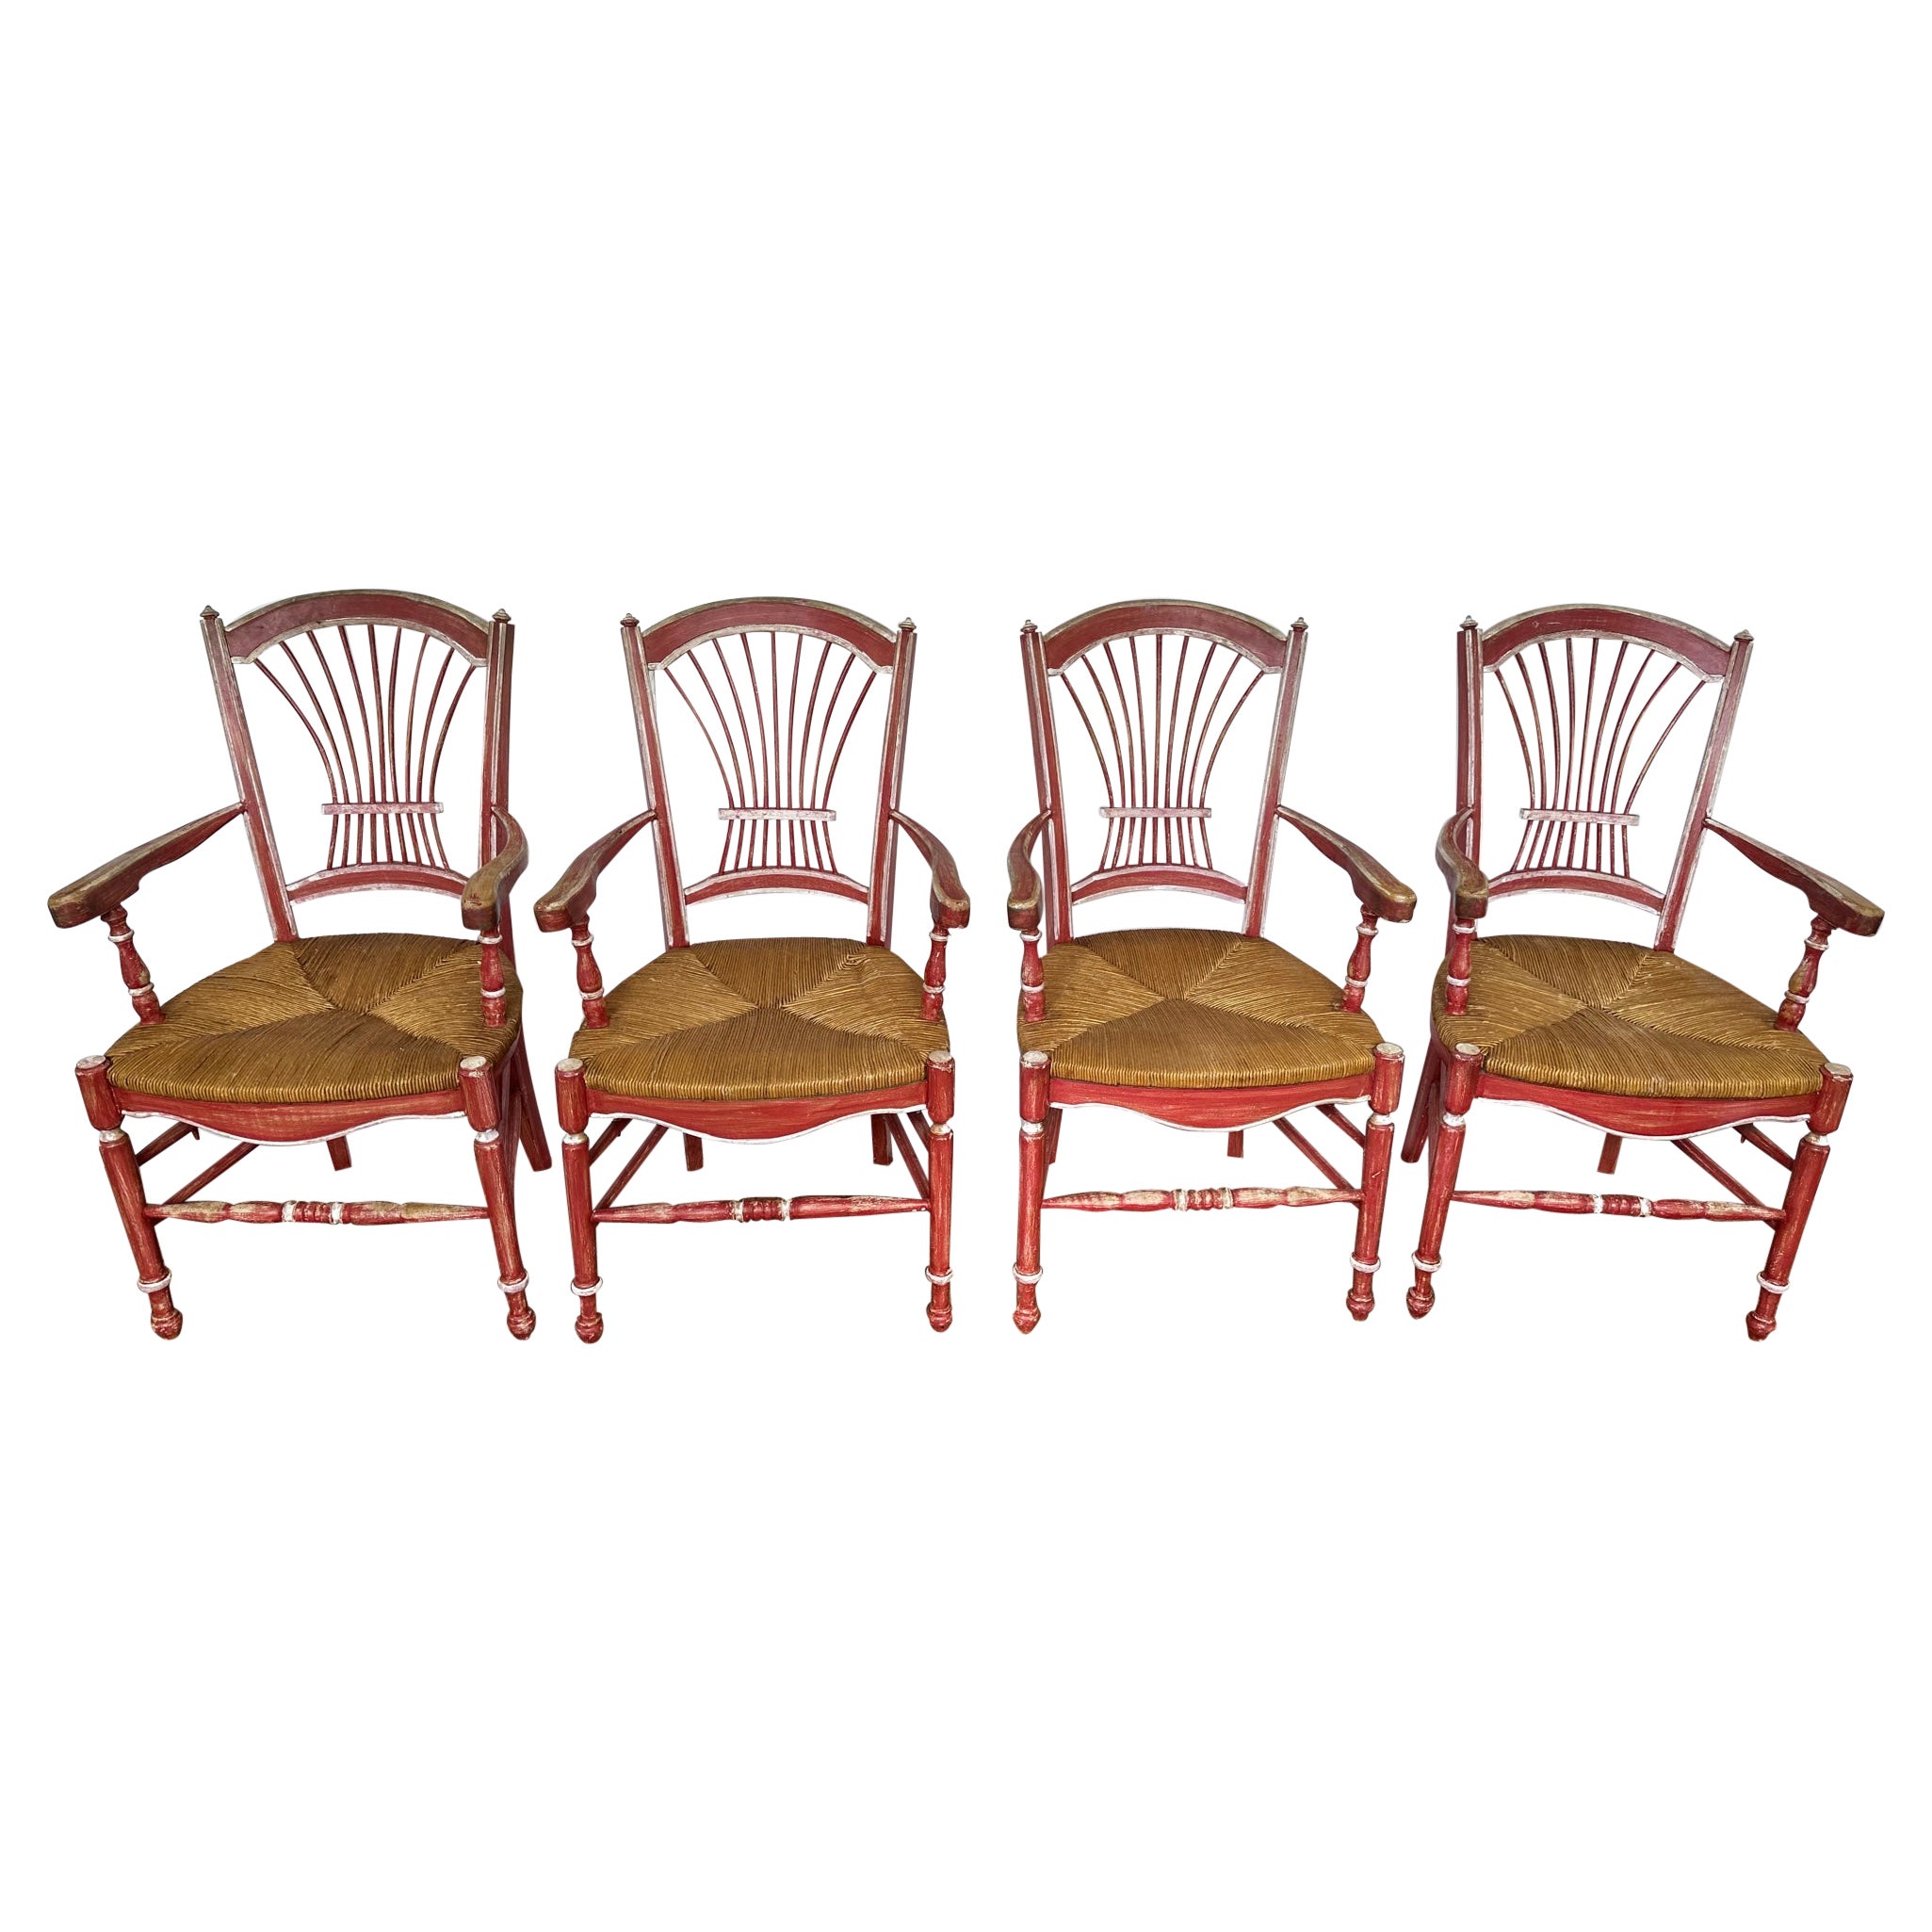 Satz von 4 rot lackierten französischen Vintage-Esszimmerstühlen im Landhausstil mit Binsen-Sitzen